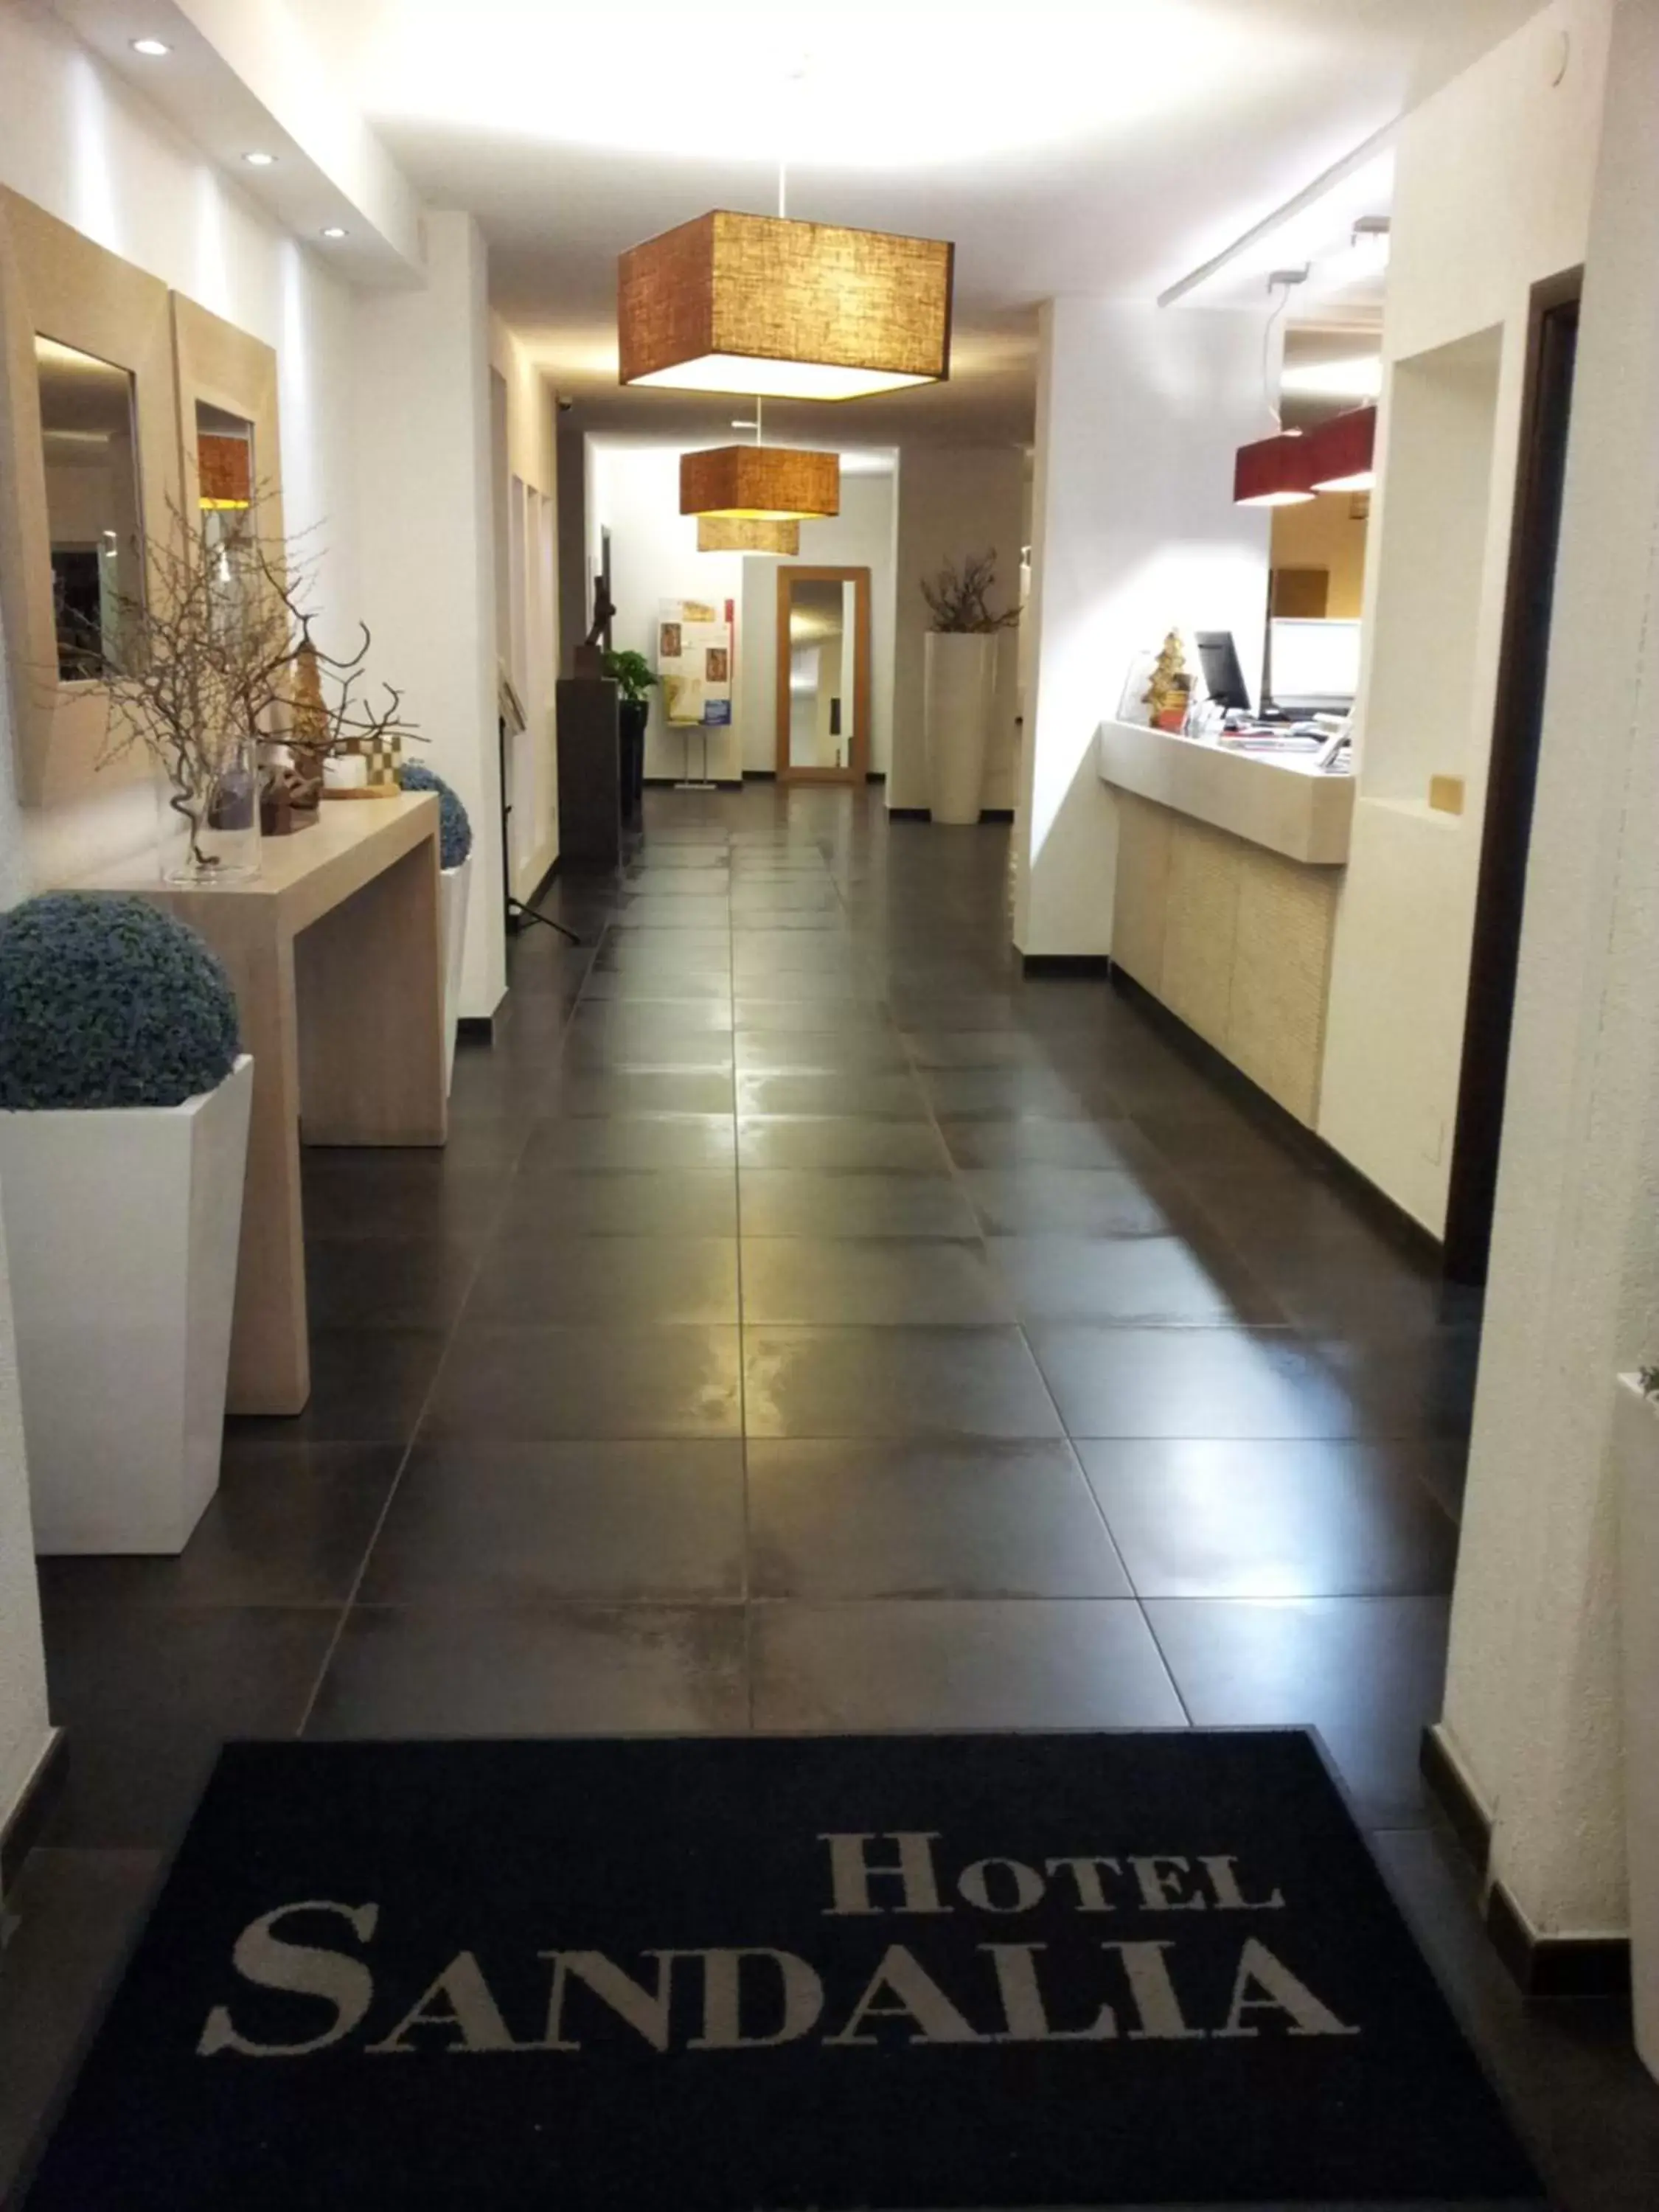 Lobby or reception, Lobby/Reception in Hotel Sandalia